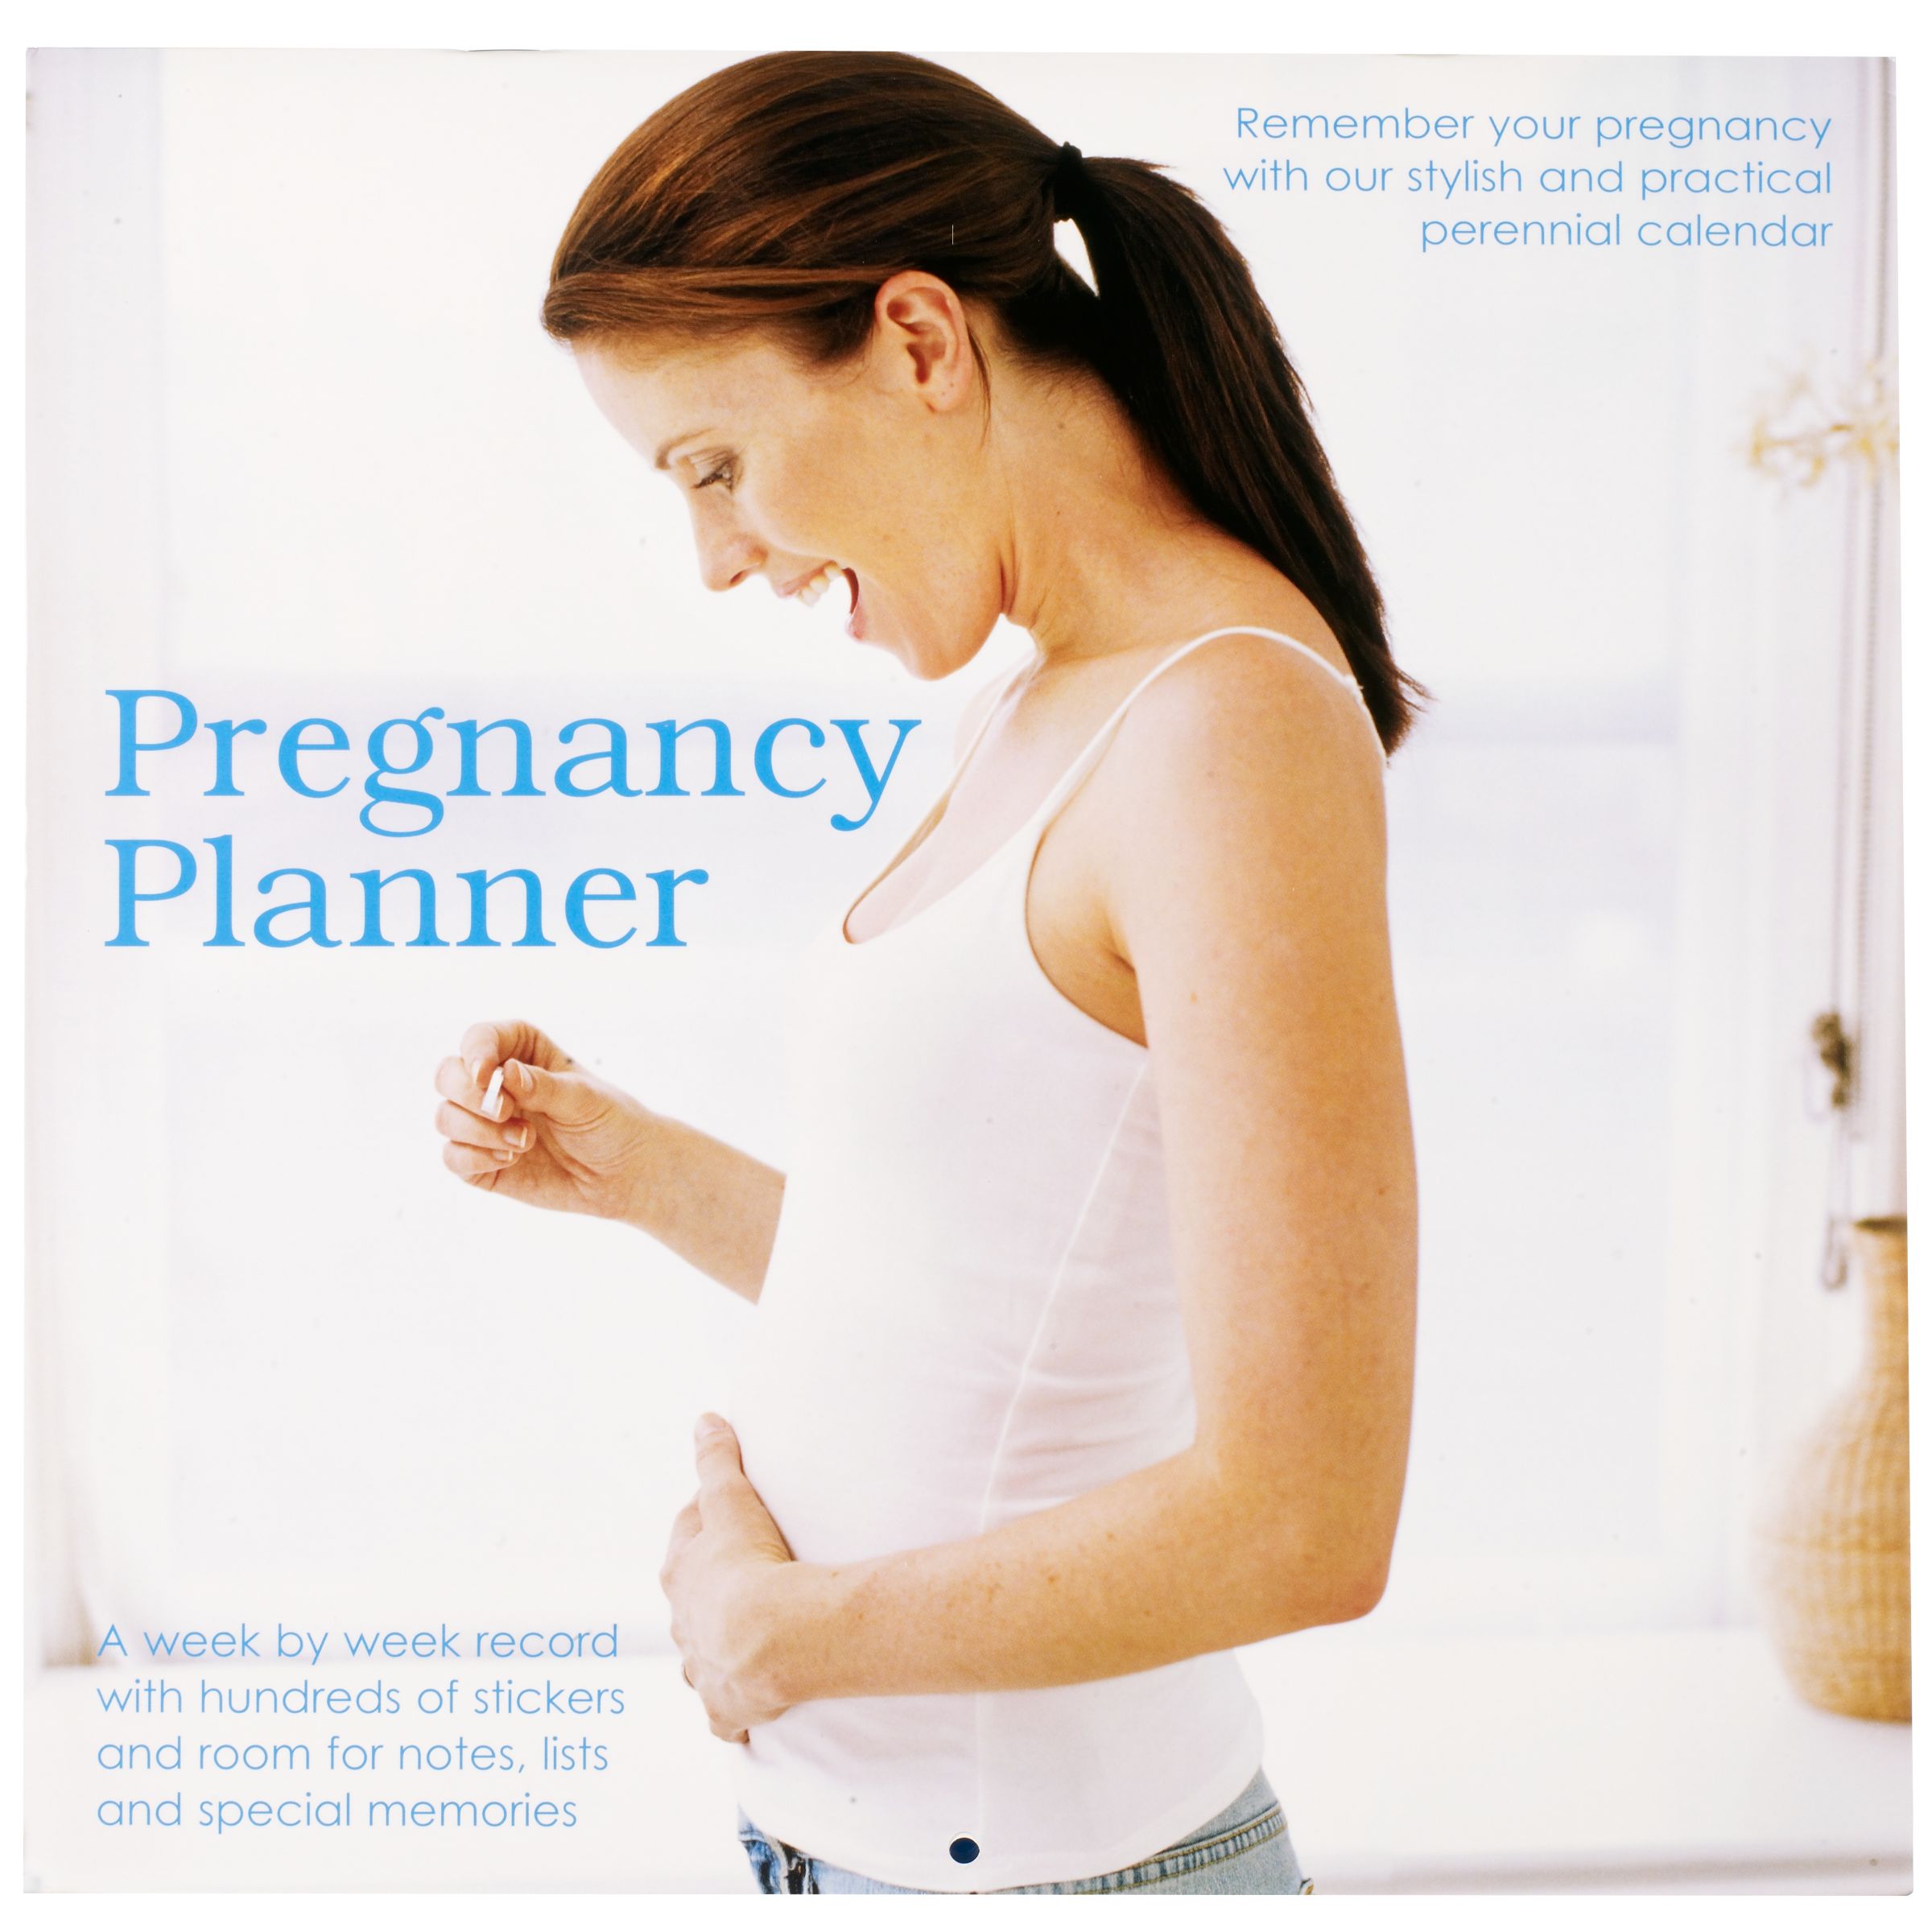 изменения груди при беременности на ранних сроках форум фото 100